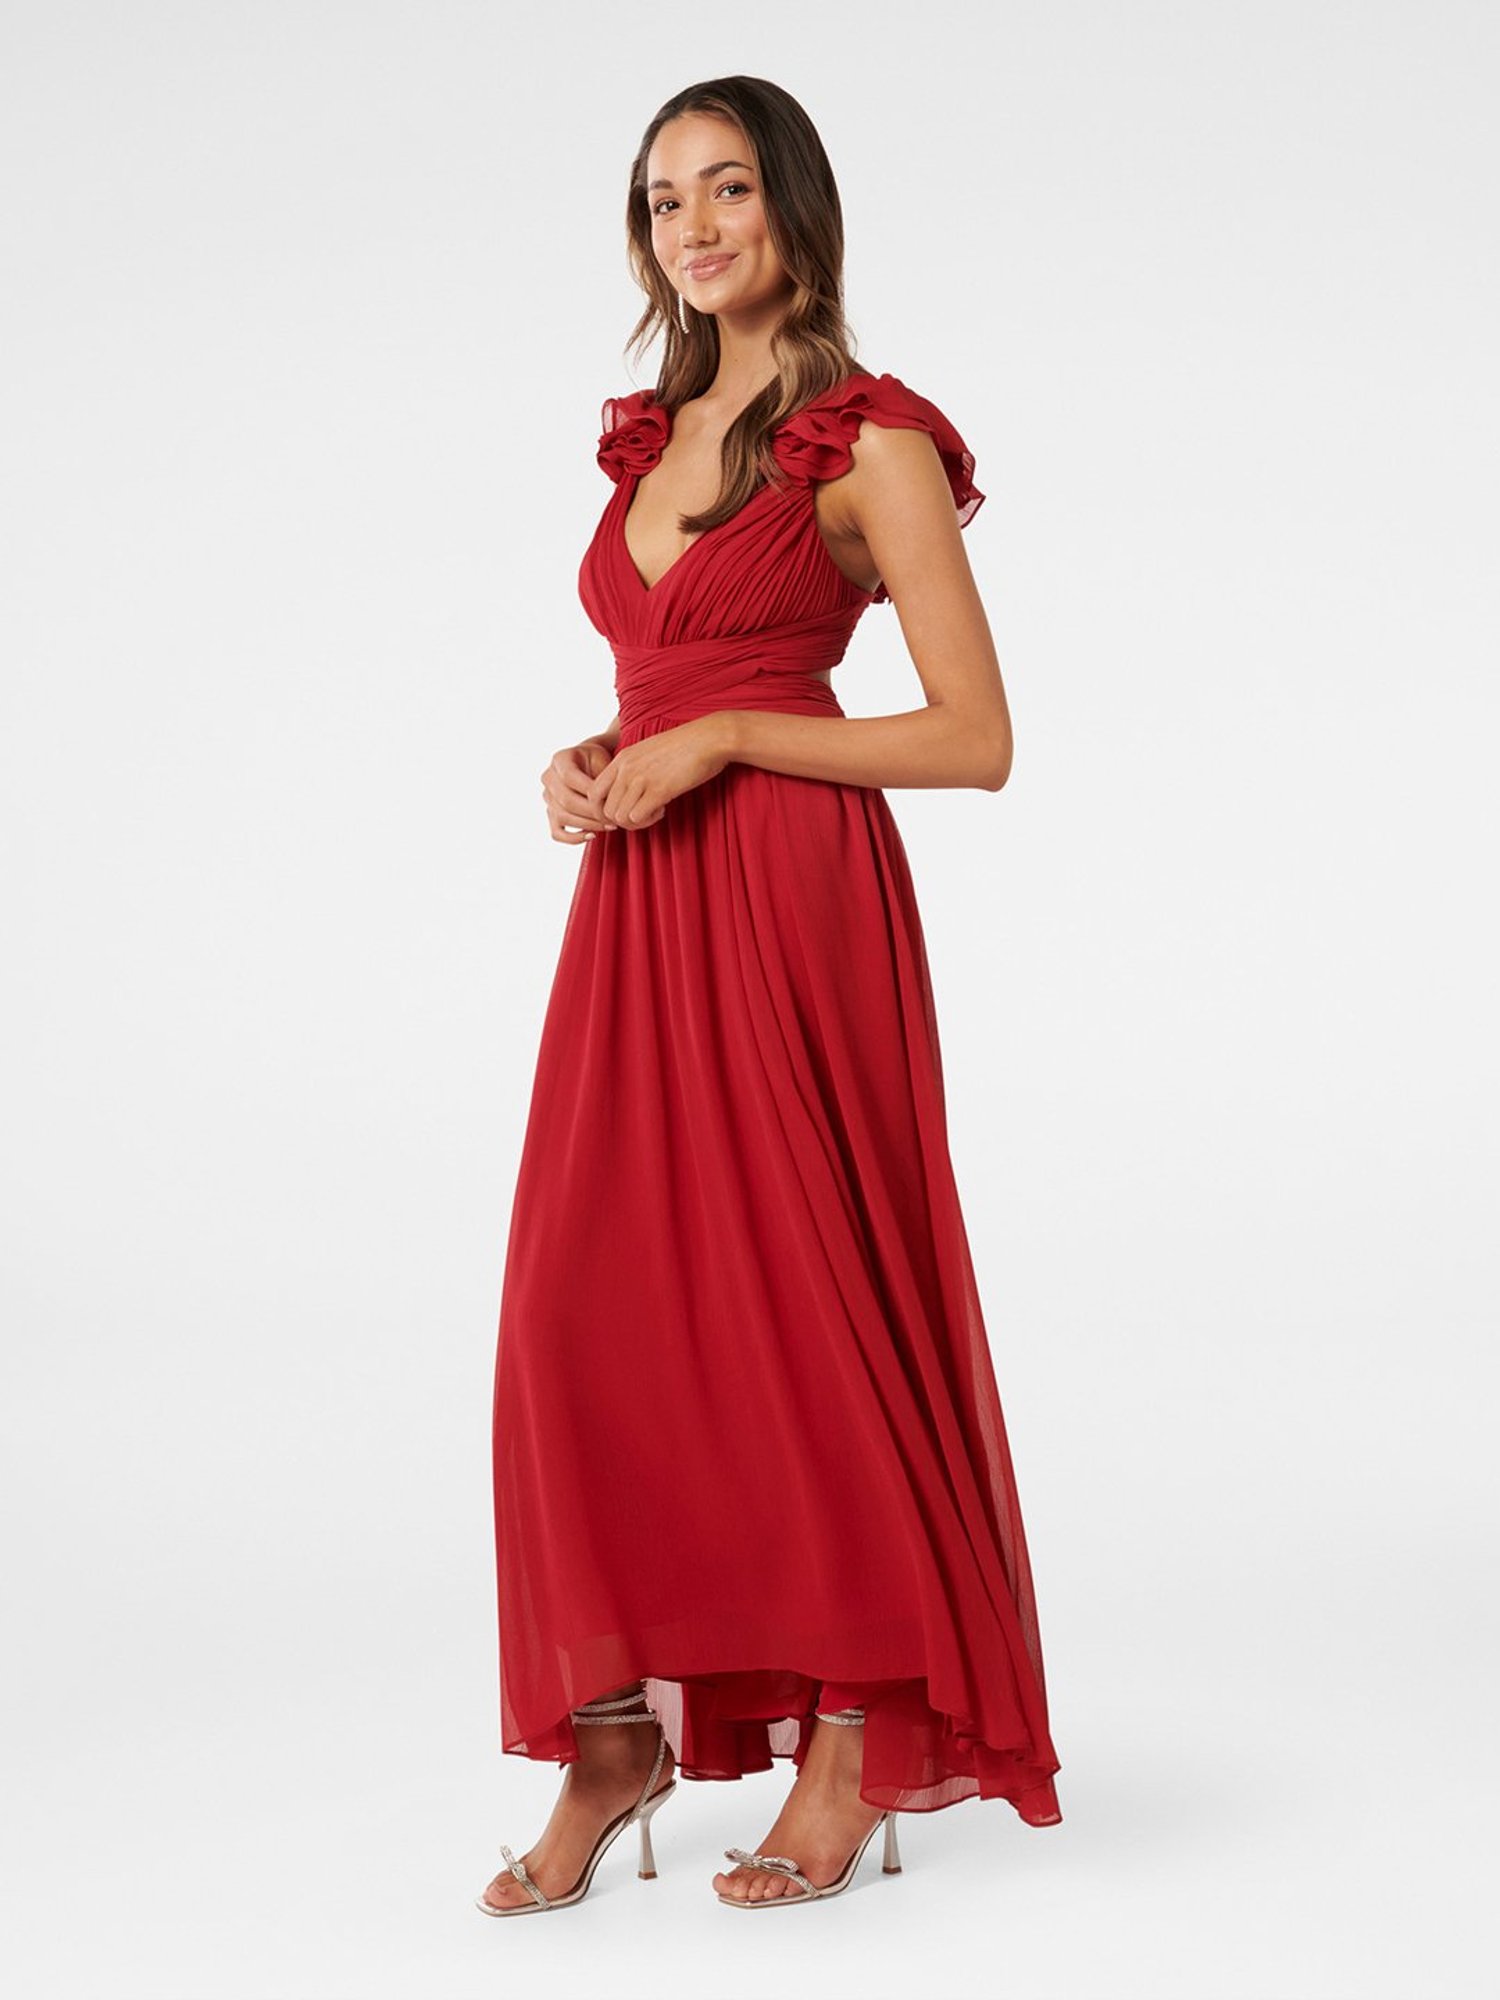 Pretty Red Floral Print Dress - Maxi Dress - Surplice Maxi Dress - Lulus